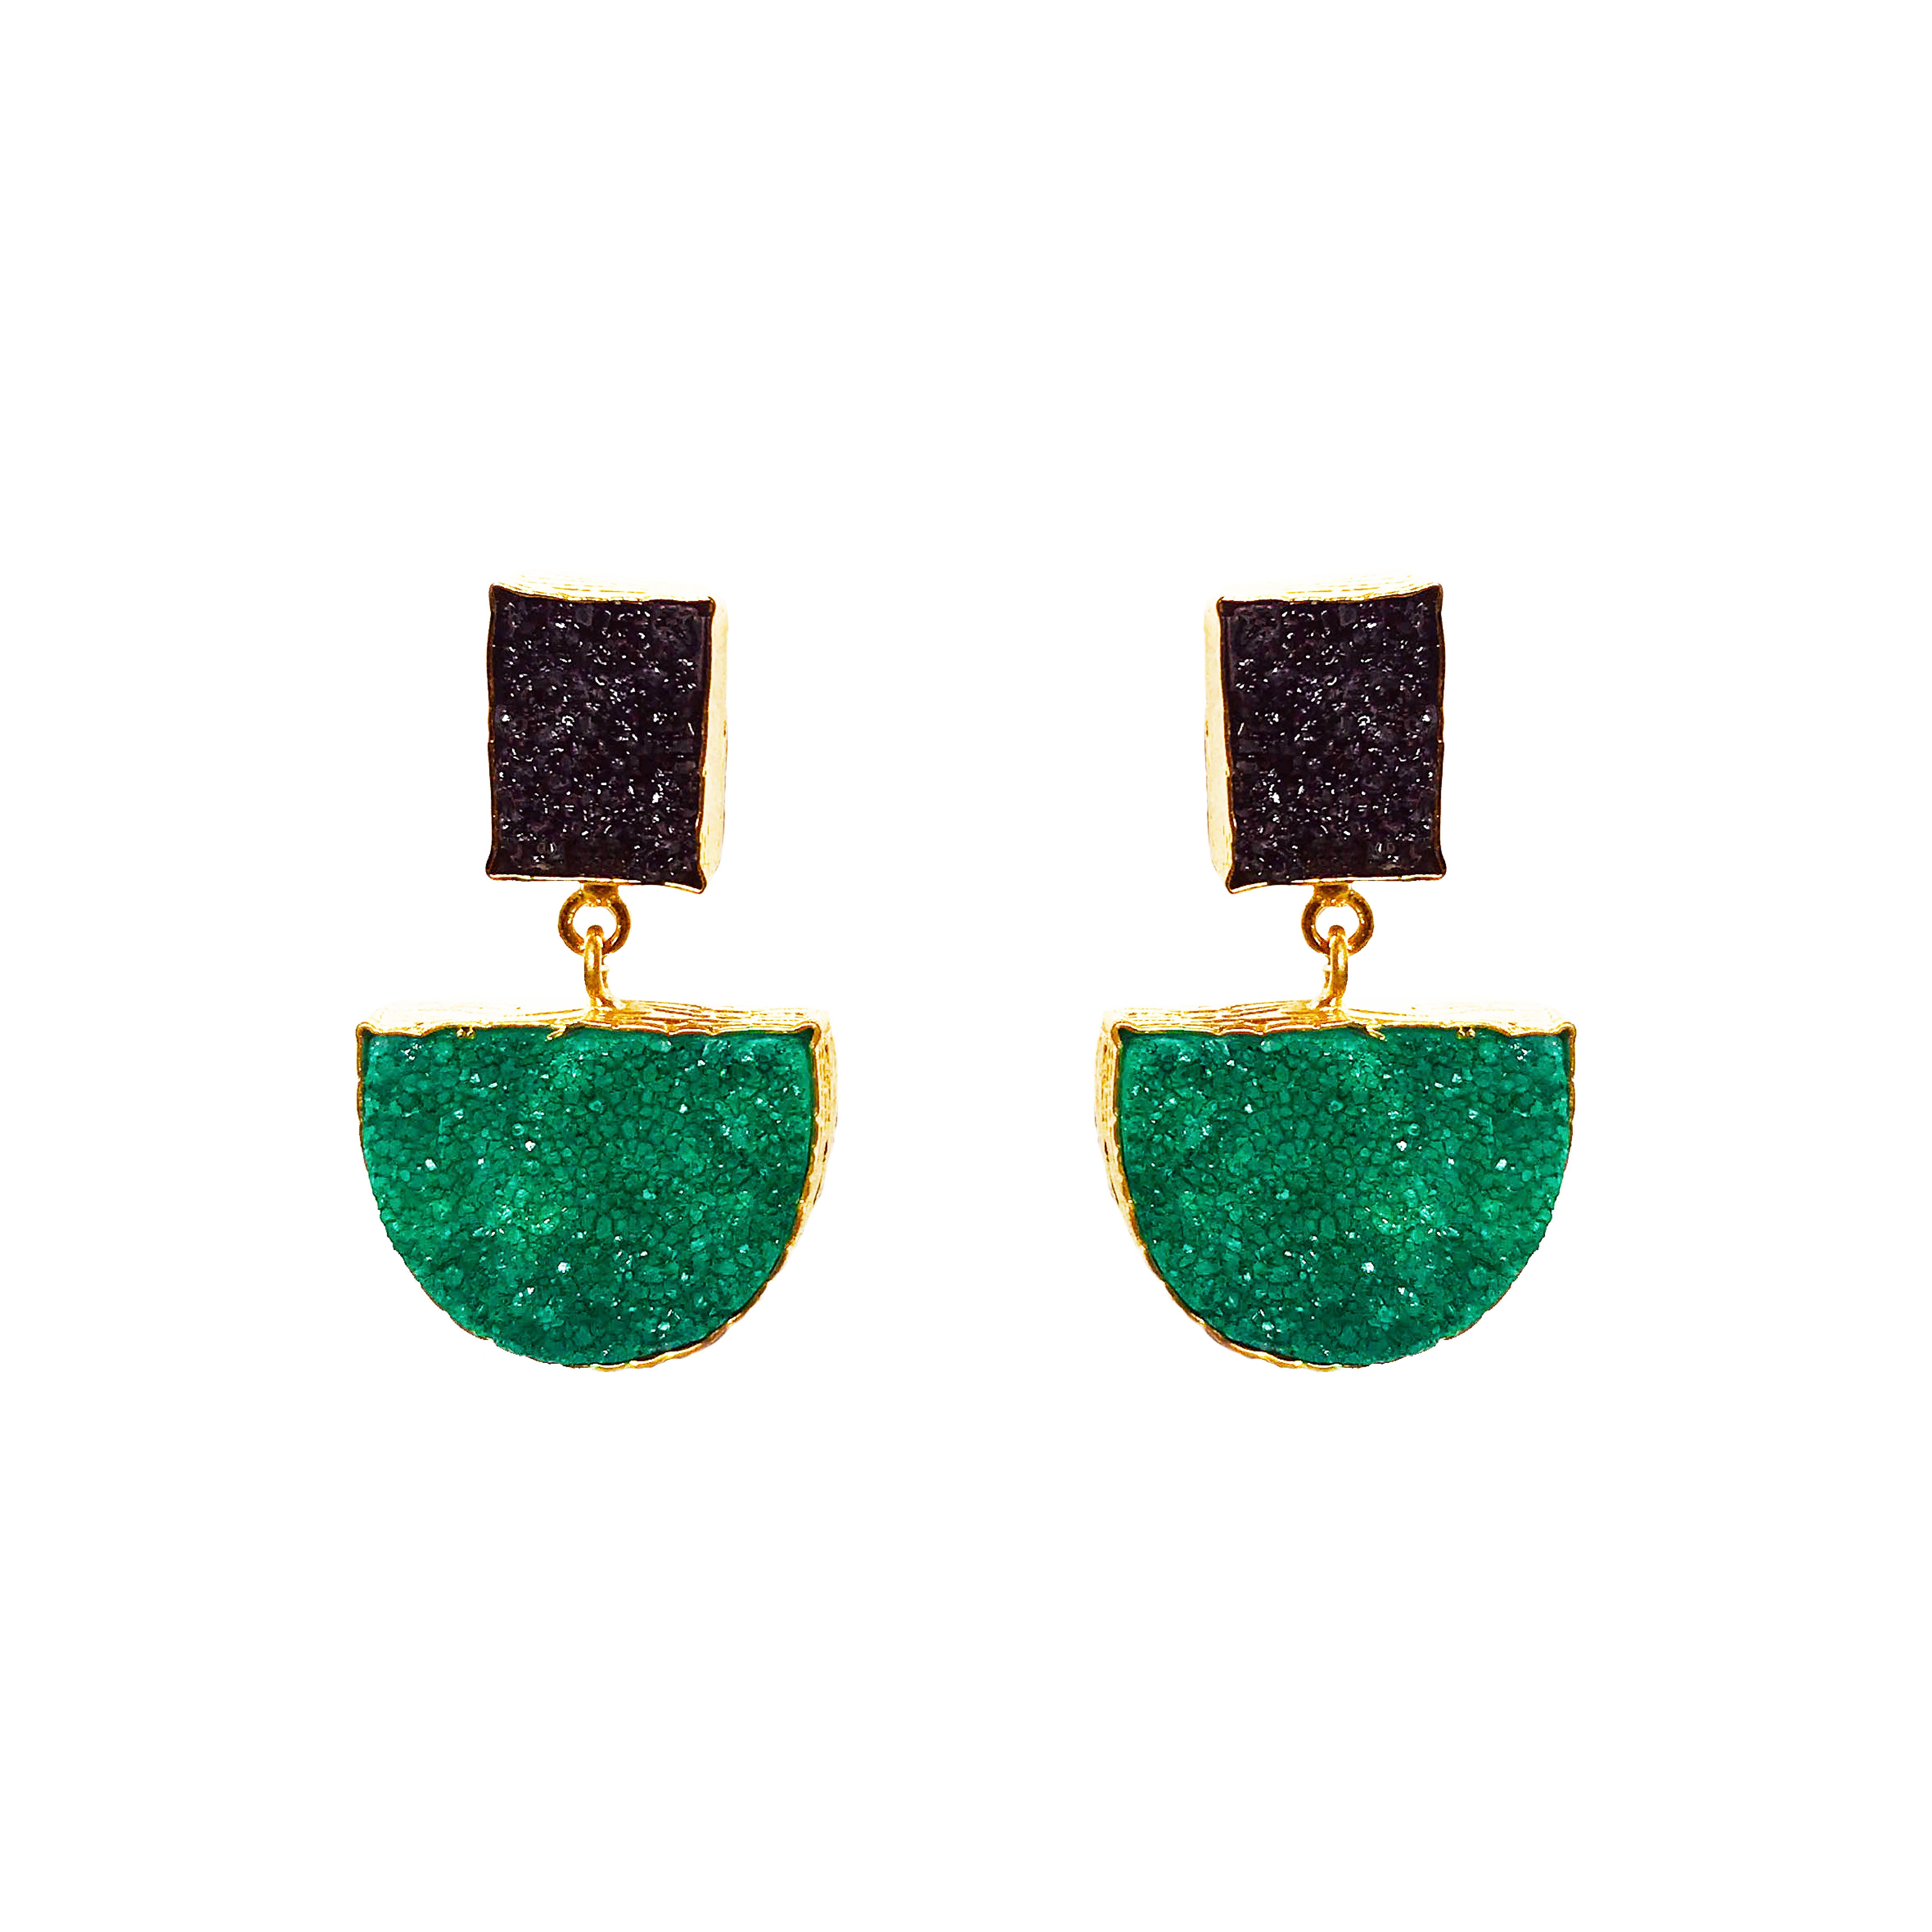 Suzanne Earrings Emerald (semi-precious)